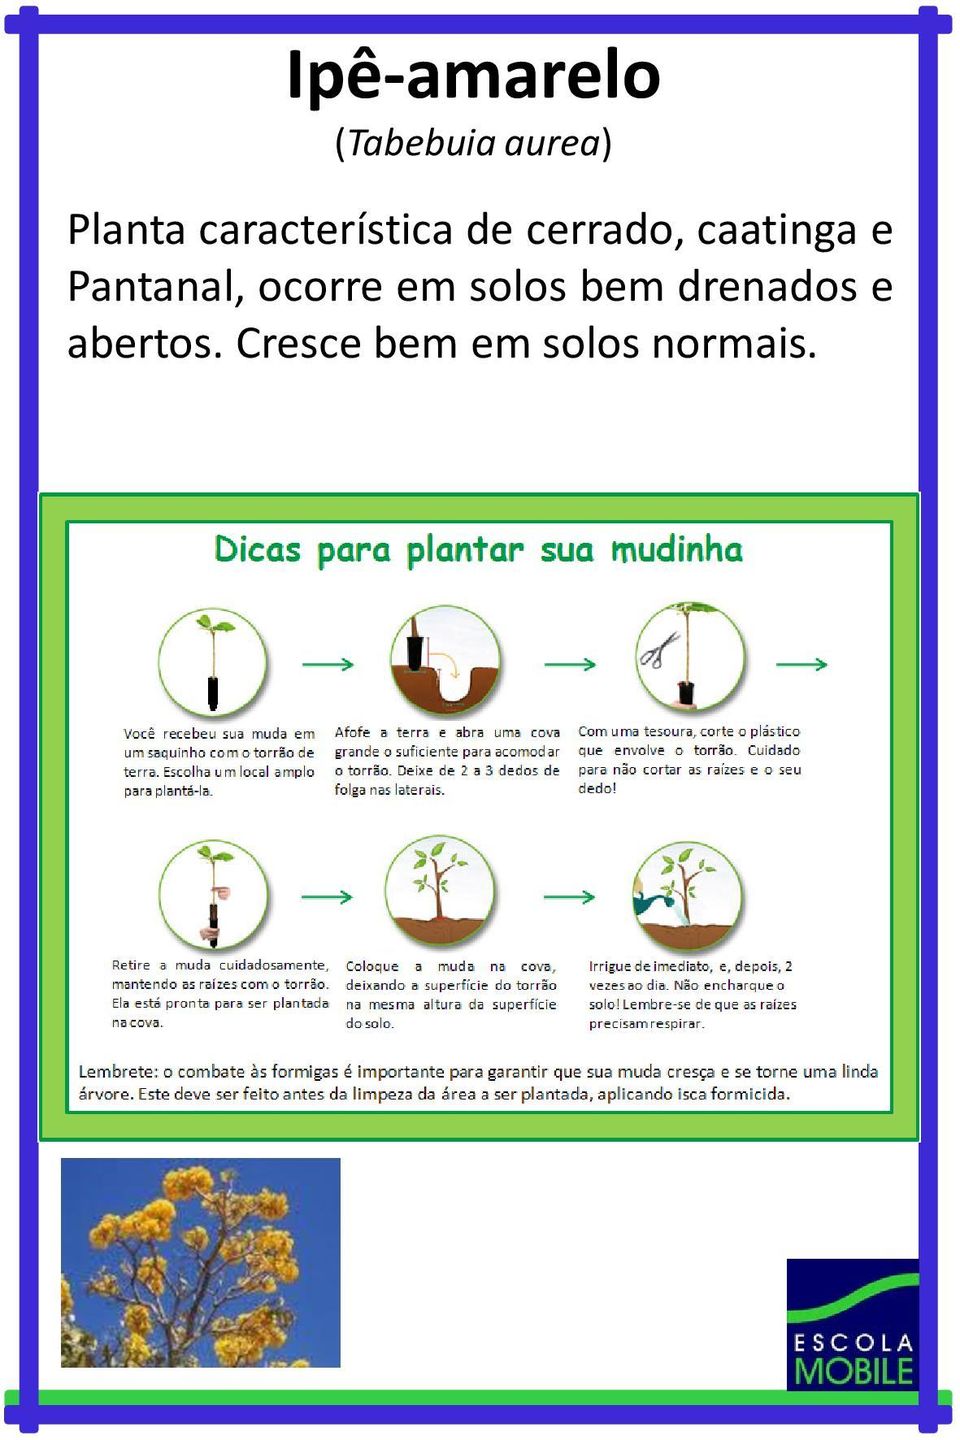 Pantanal, ocorre em solos bem